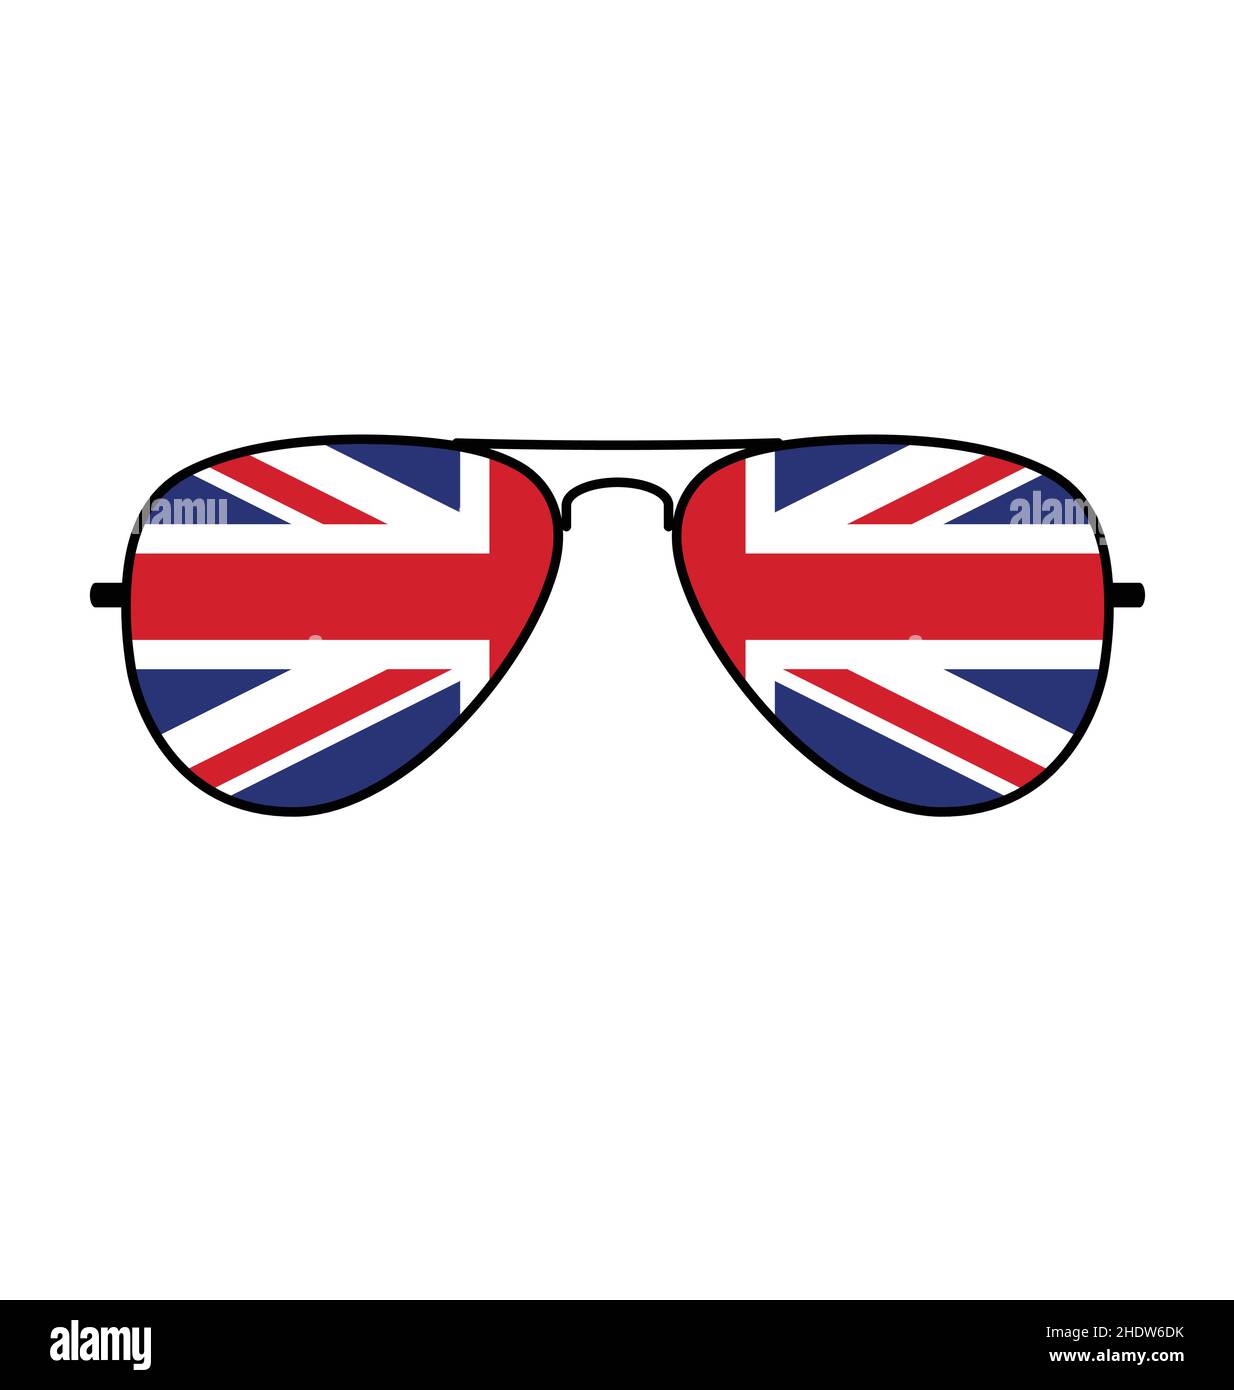 Cool simple Aviator lunettes de soleil avec drapeau britannique drapeau de  prise dans les lentilles vecteur isolé sur fond blanc Image Vectorielle  Stock - Alamy